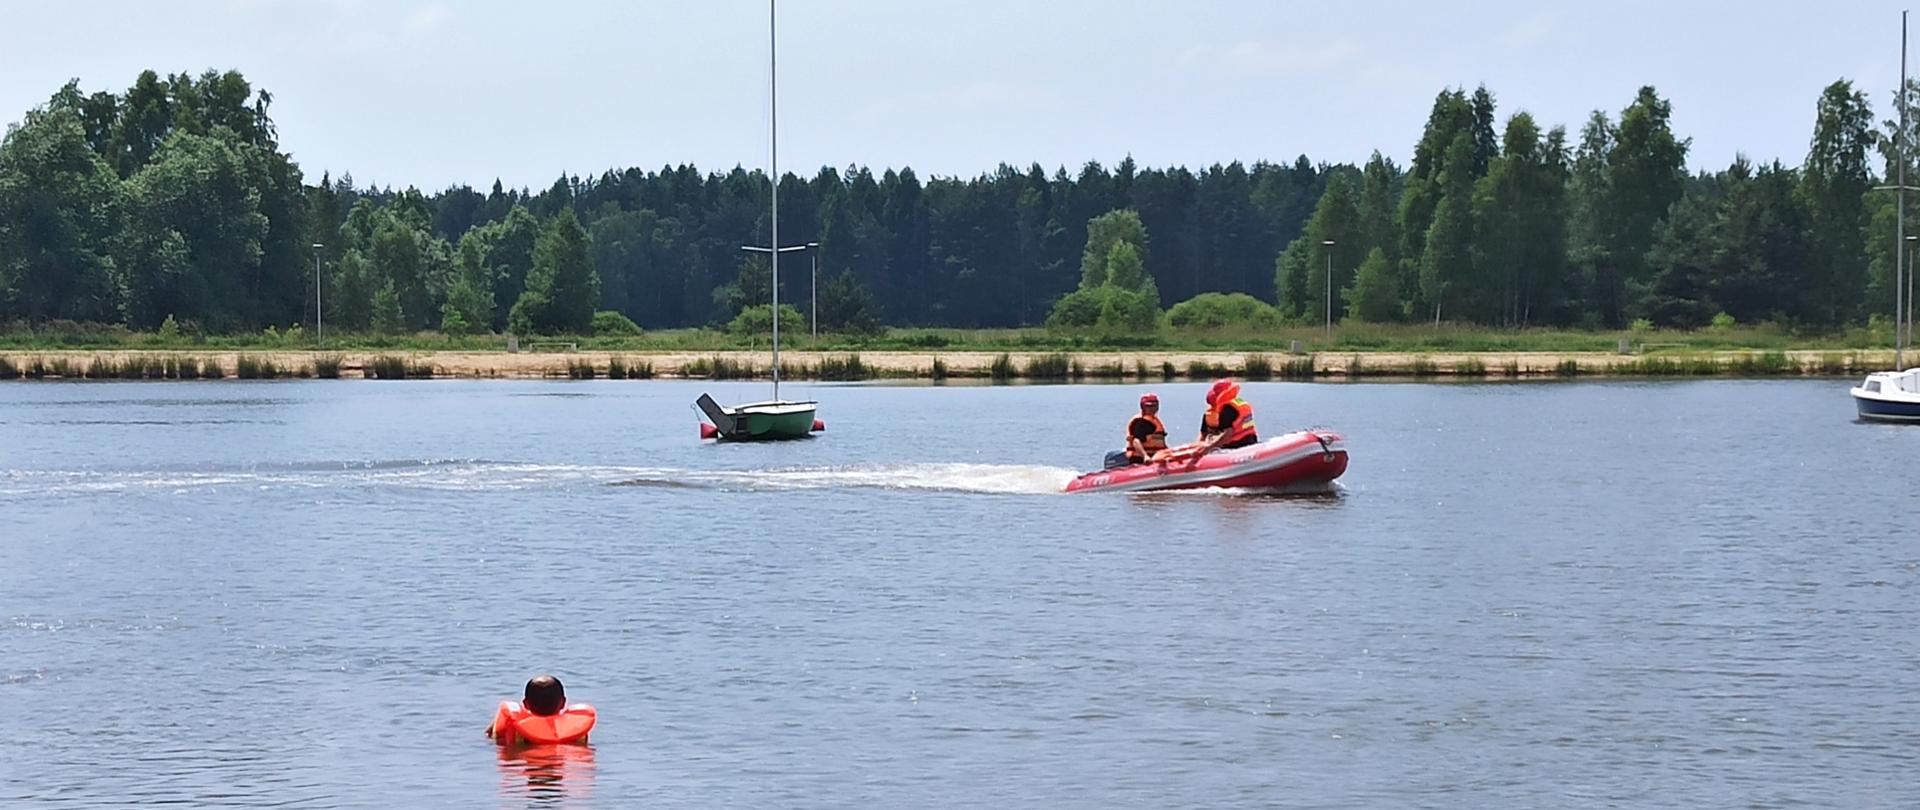 strażacy na łodzi ratowniczej podpływają do osoby będącej w wodzie